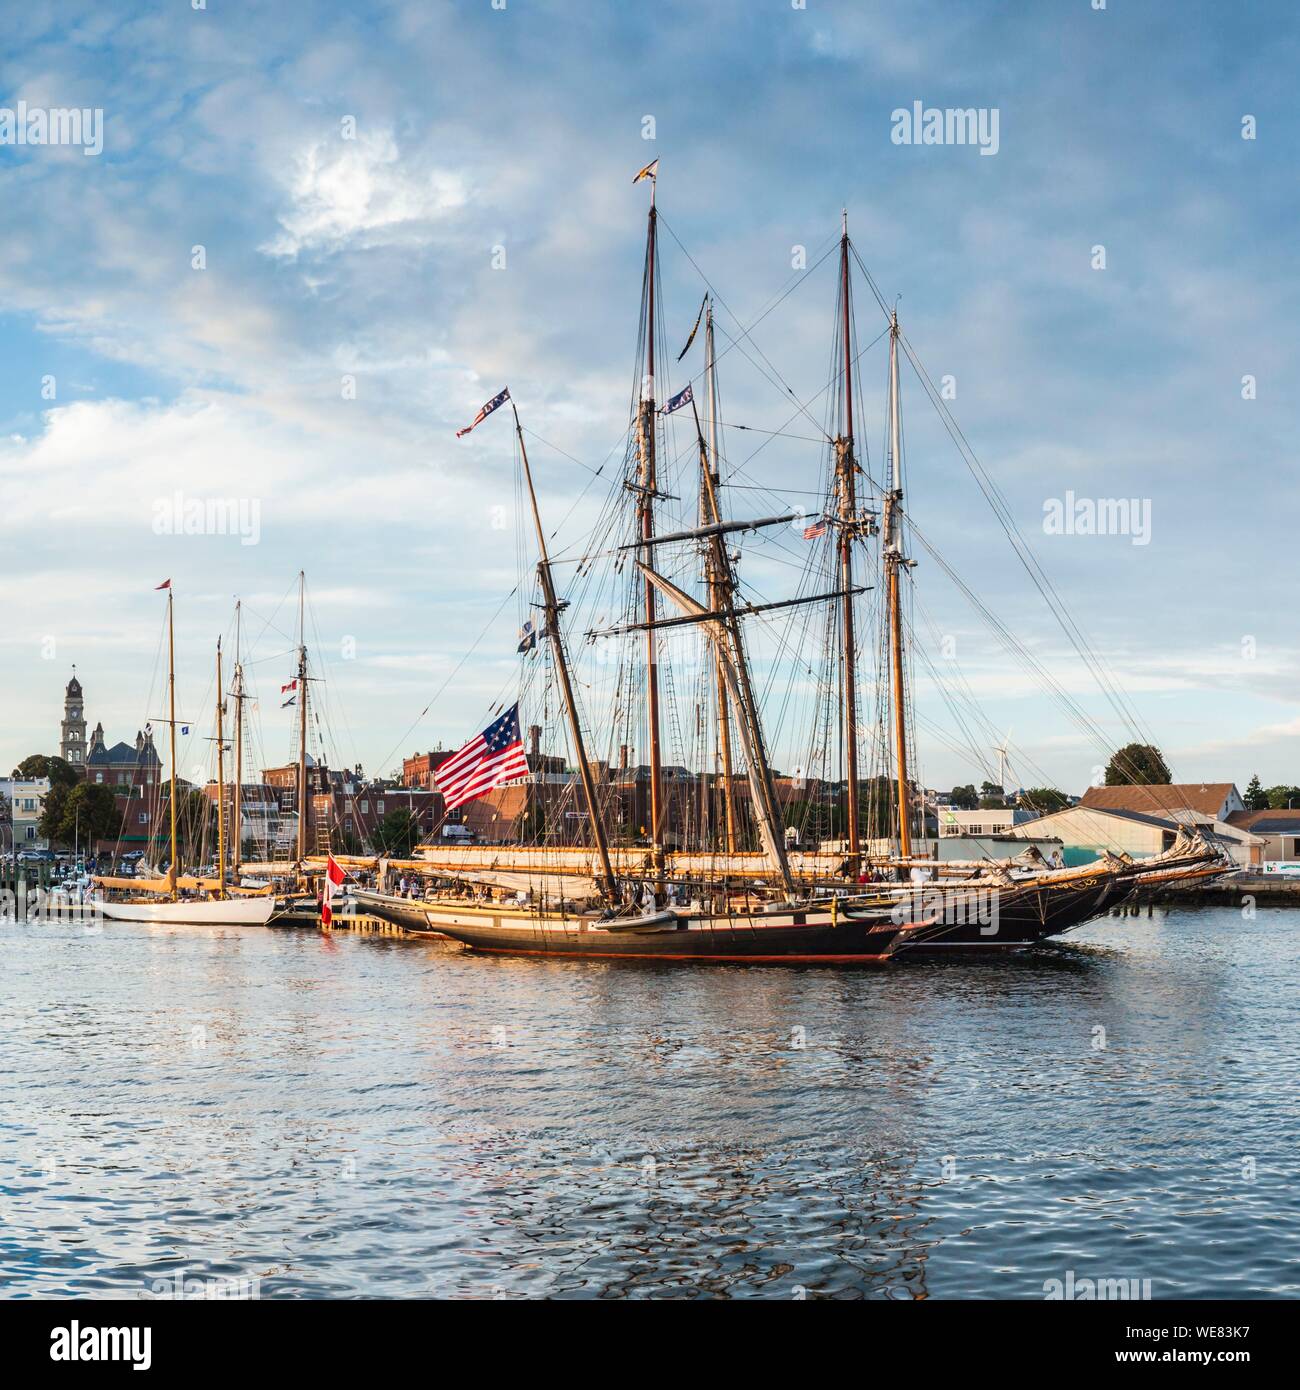 United States, New England, Massachusetts, Cape Ann, Gloucester, Gloucester Schooner Festival, schooners in Gloucester Harbor, dusk Stock Photo